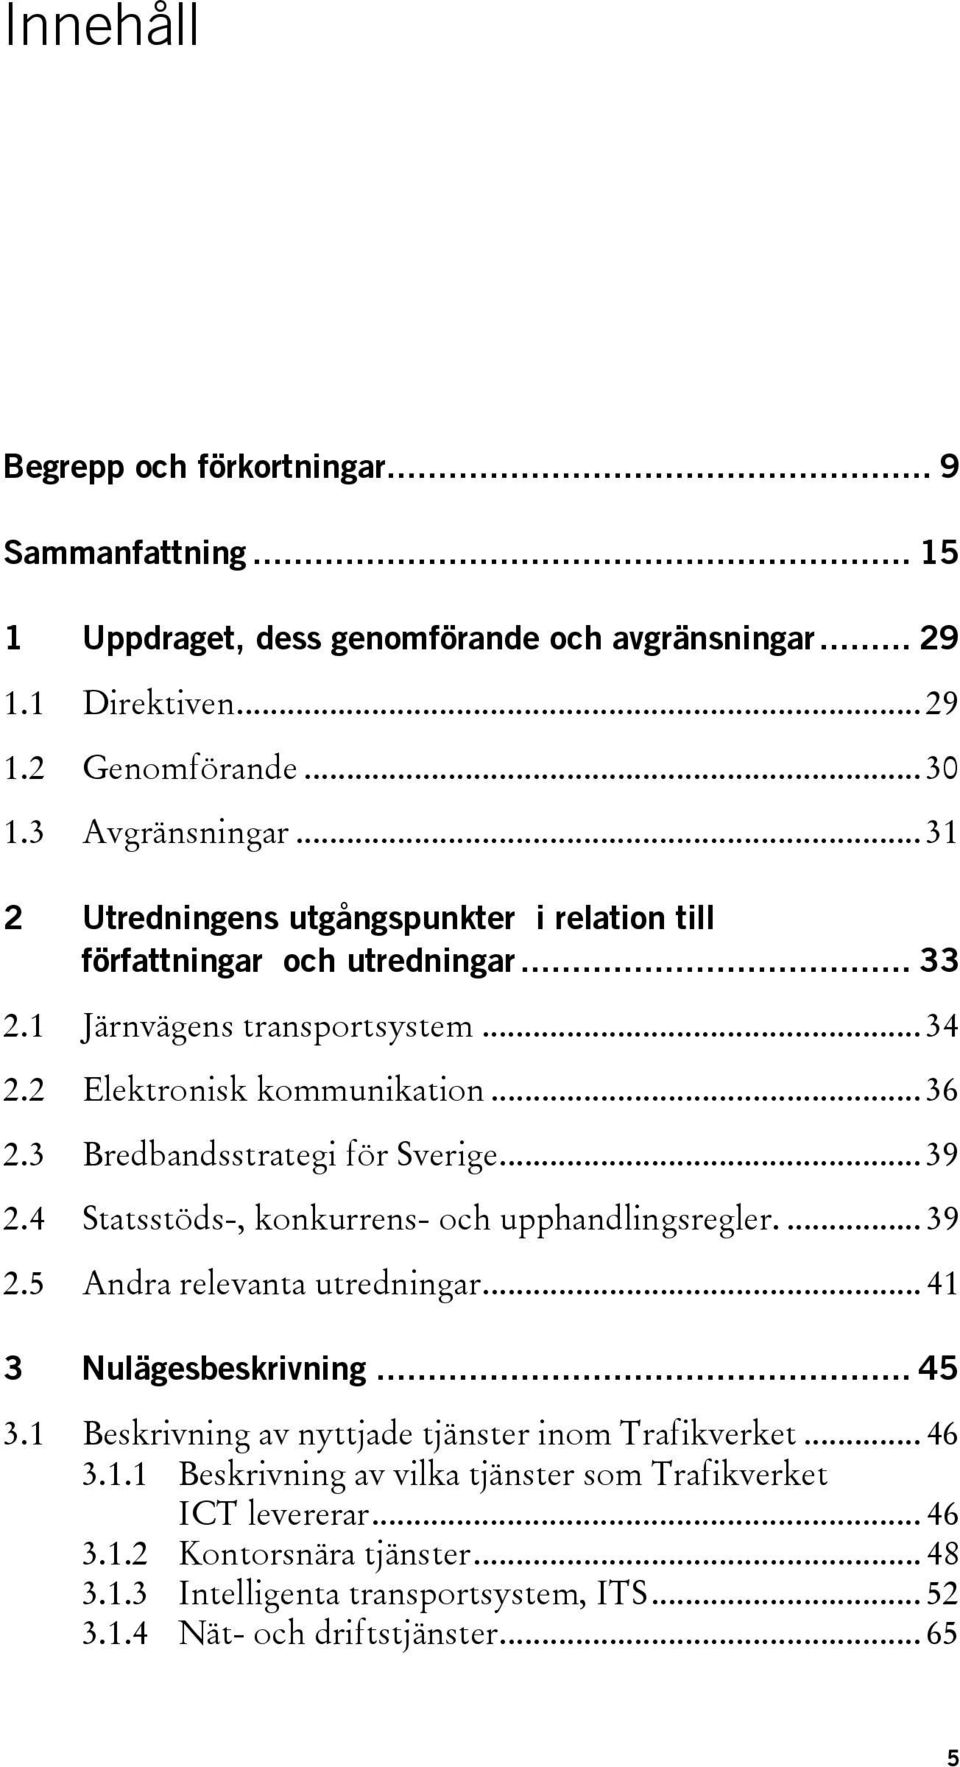 3 Bredbandsstrategi för Sverige... 39 2.4 Statsstöds-, konkurrens- och upphandlingsregler.... 39 2.5 Andra relevanta utredningar... 41 3 Nulägesbeskrivning... 45 3.